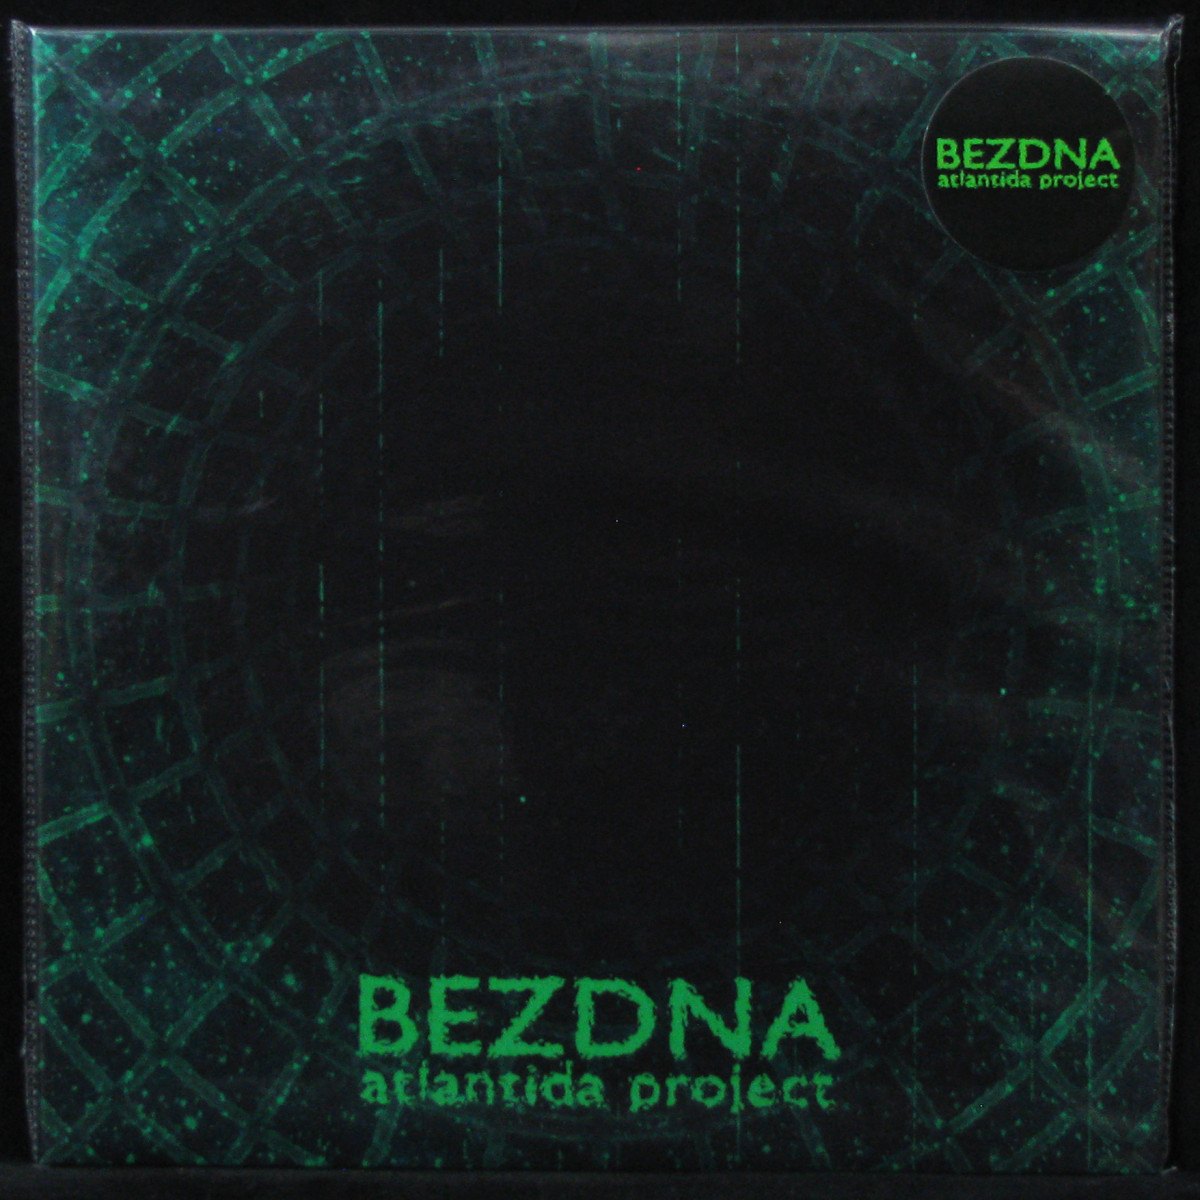 LP Atlantida Project — Bezdna (2LP, + 2 booklets, + 2 postcards) фото